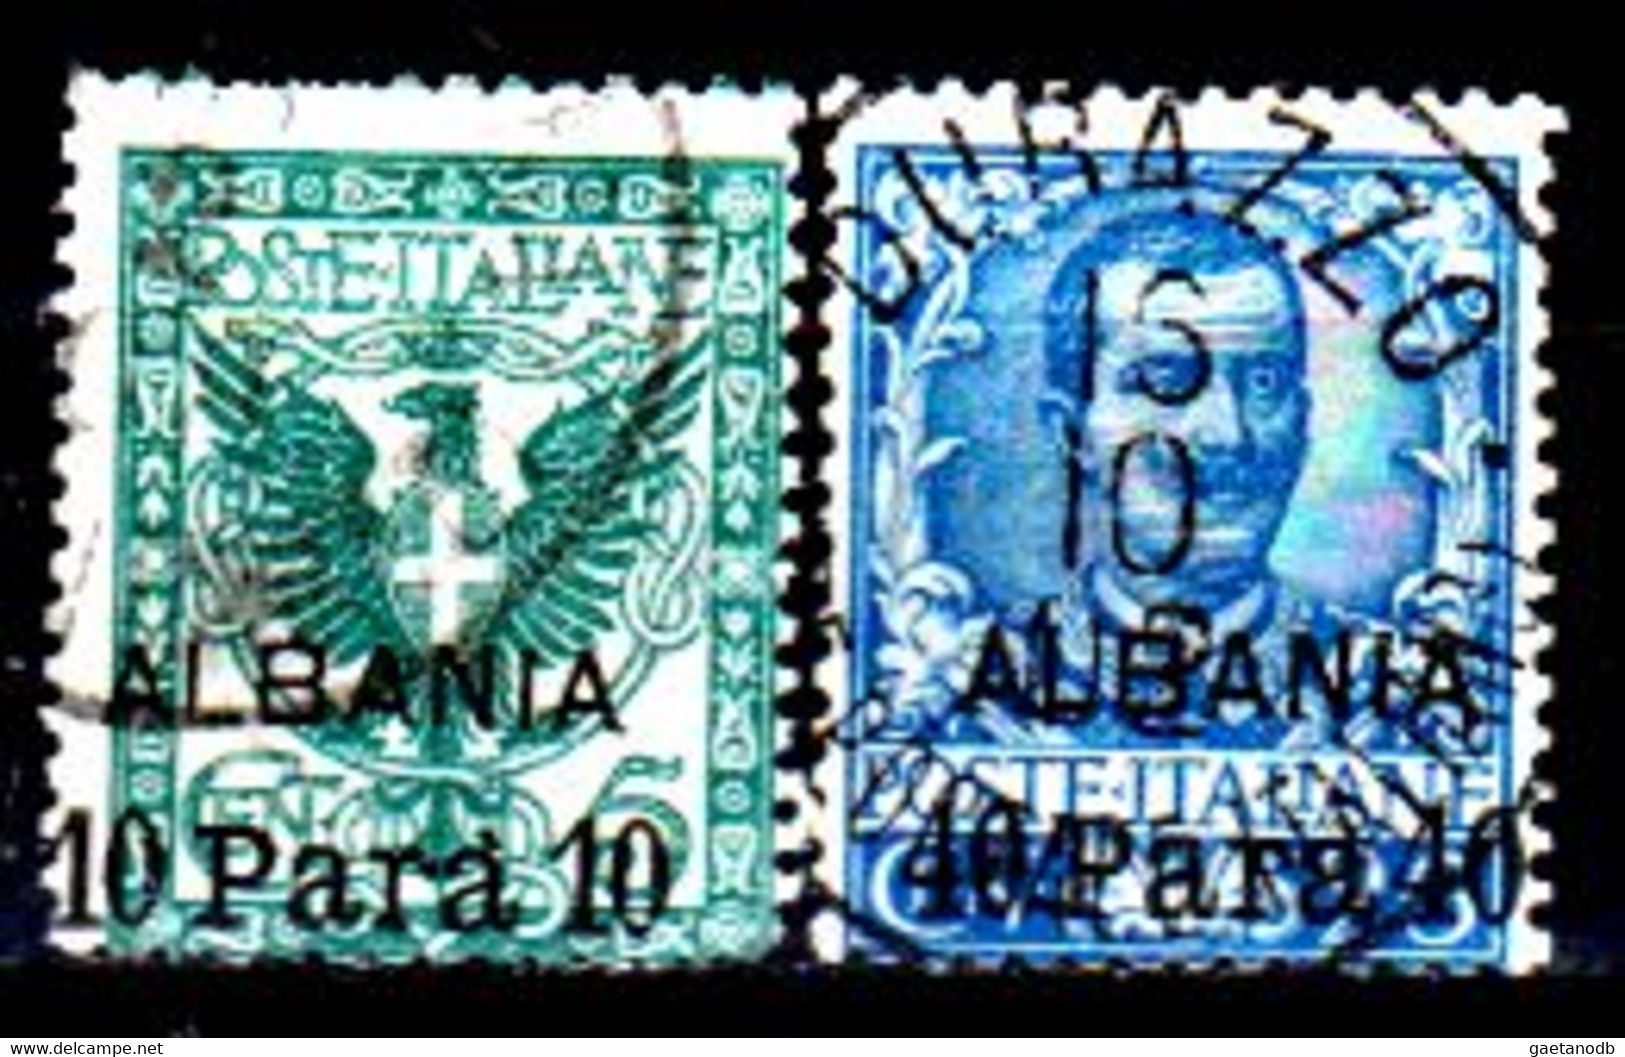 Italia-G-1027 - Albania 1902: Sassone, N. 1, 3 (o) Used - Qualità A Vostro Giudizio. - Albanien